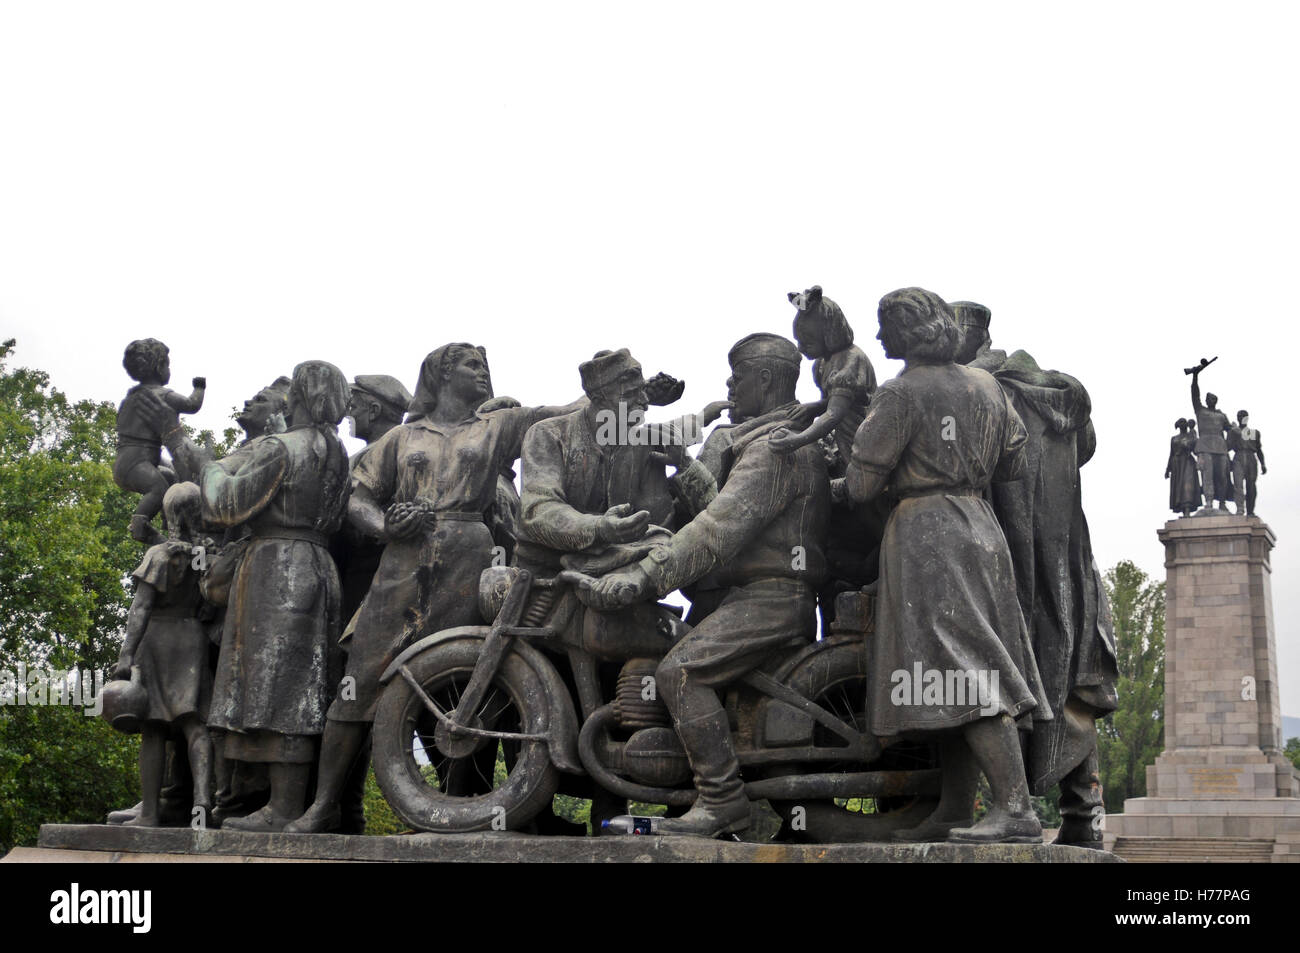 Monument à l'armée soviétique. Sofia, Bulgarie. Composition sculpturale secondaire. Banque D'Images